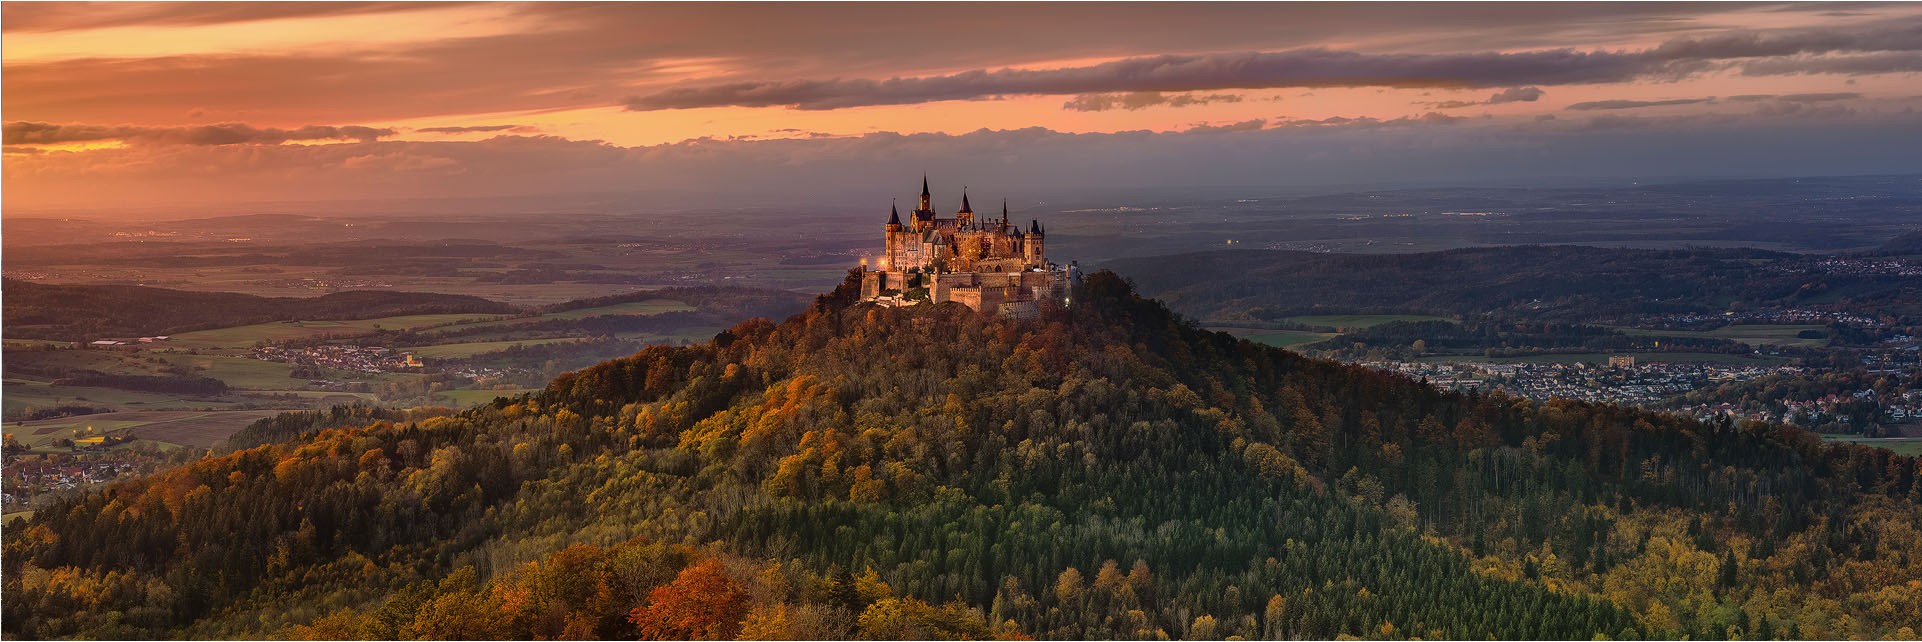 Burg Hohenzollern - Mittel- und Süddeutschland